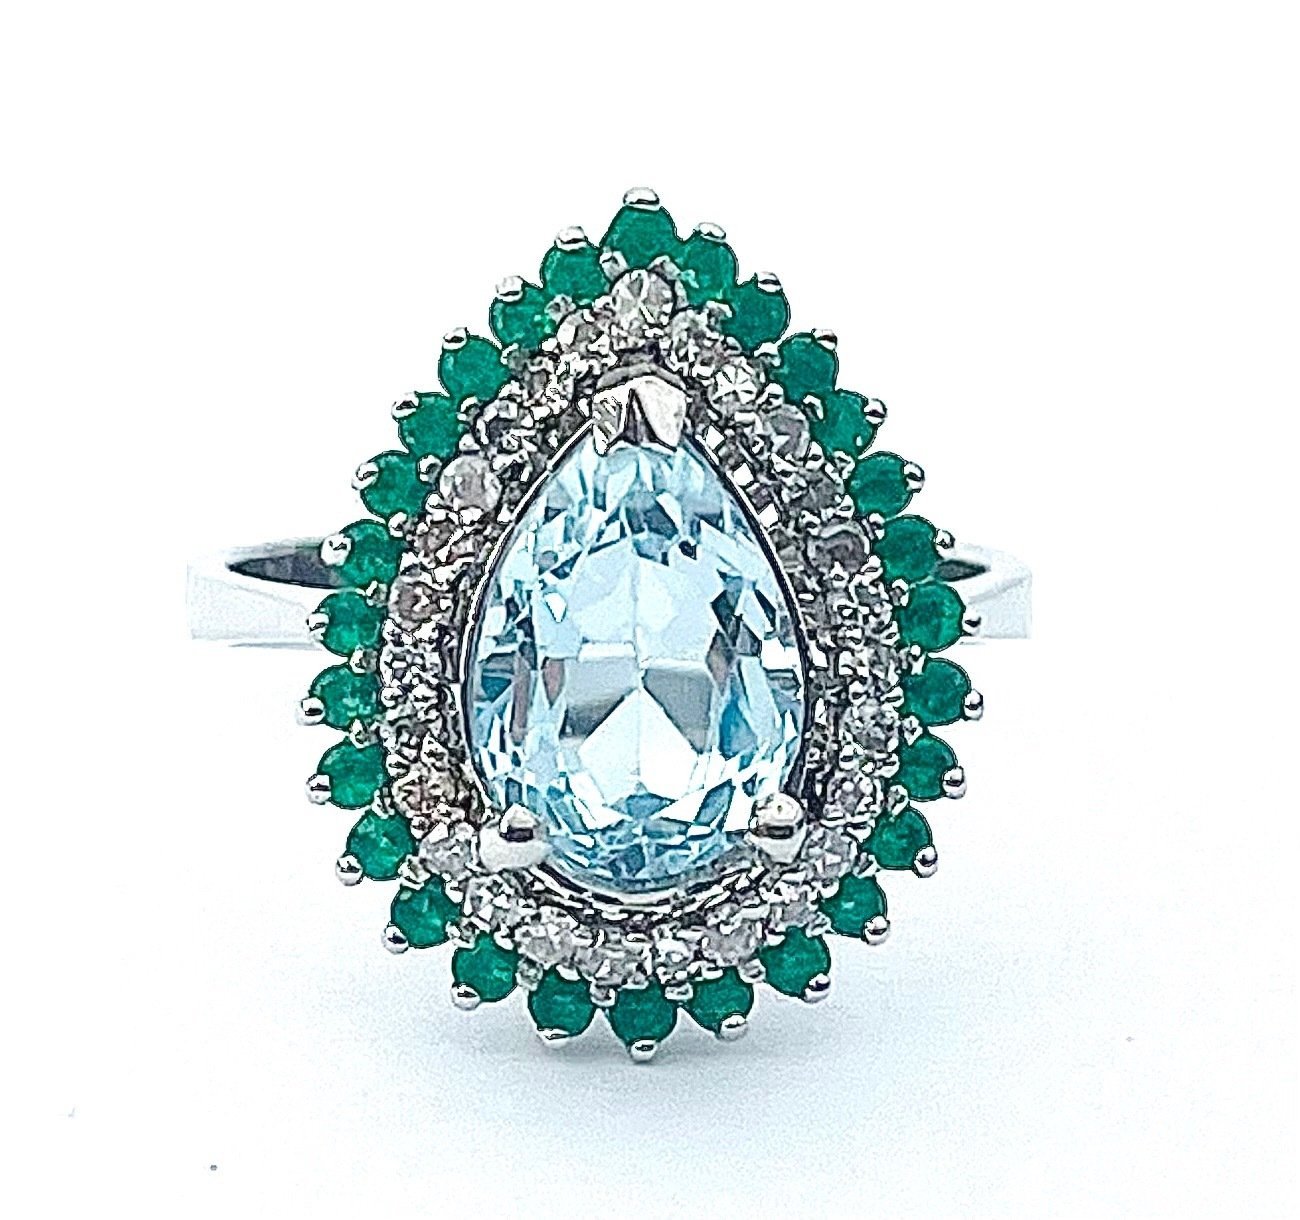 .. - Designový prsten s 3,00 ct topazem, 0,25 ct diamanty a 0,28 ct smaragdy, 750/1000 bílé zlato, značeno platnou puncovní značkou "kohout", hrubá hmotnost 4,77 g